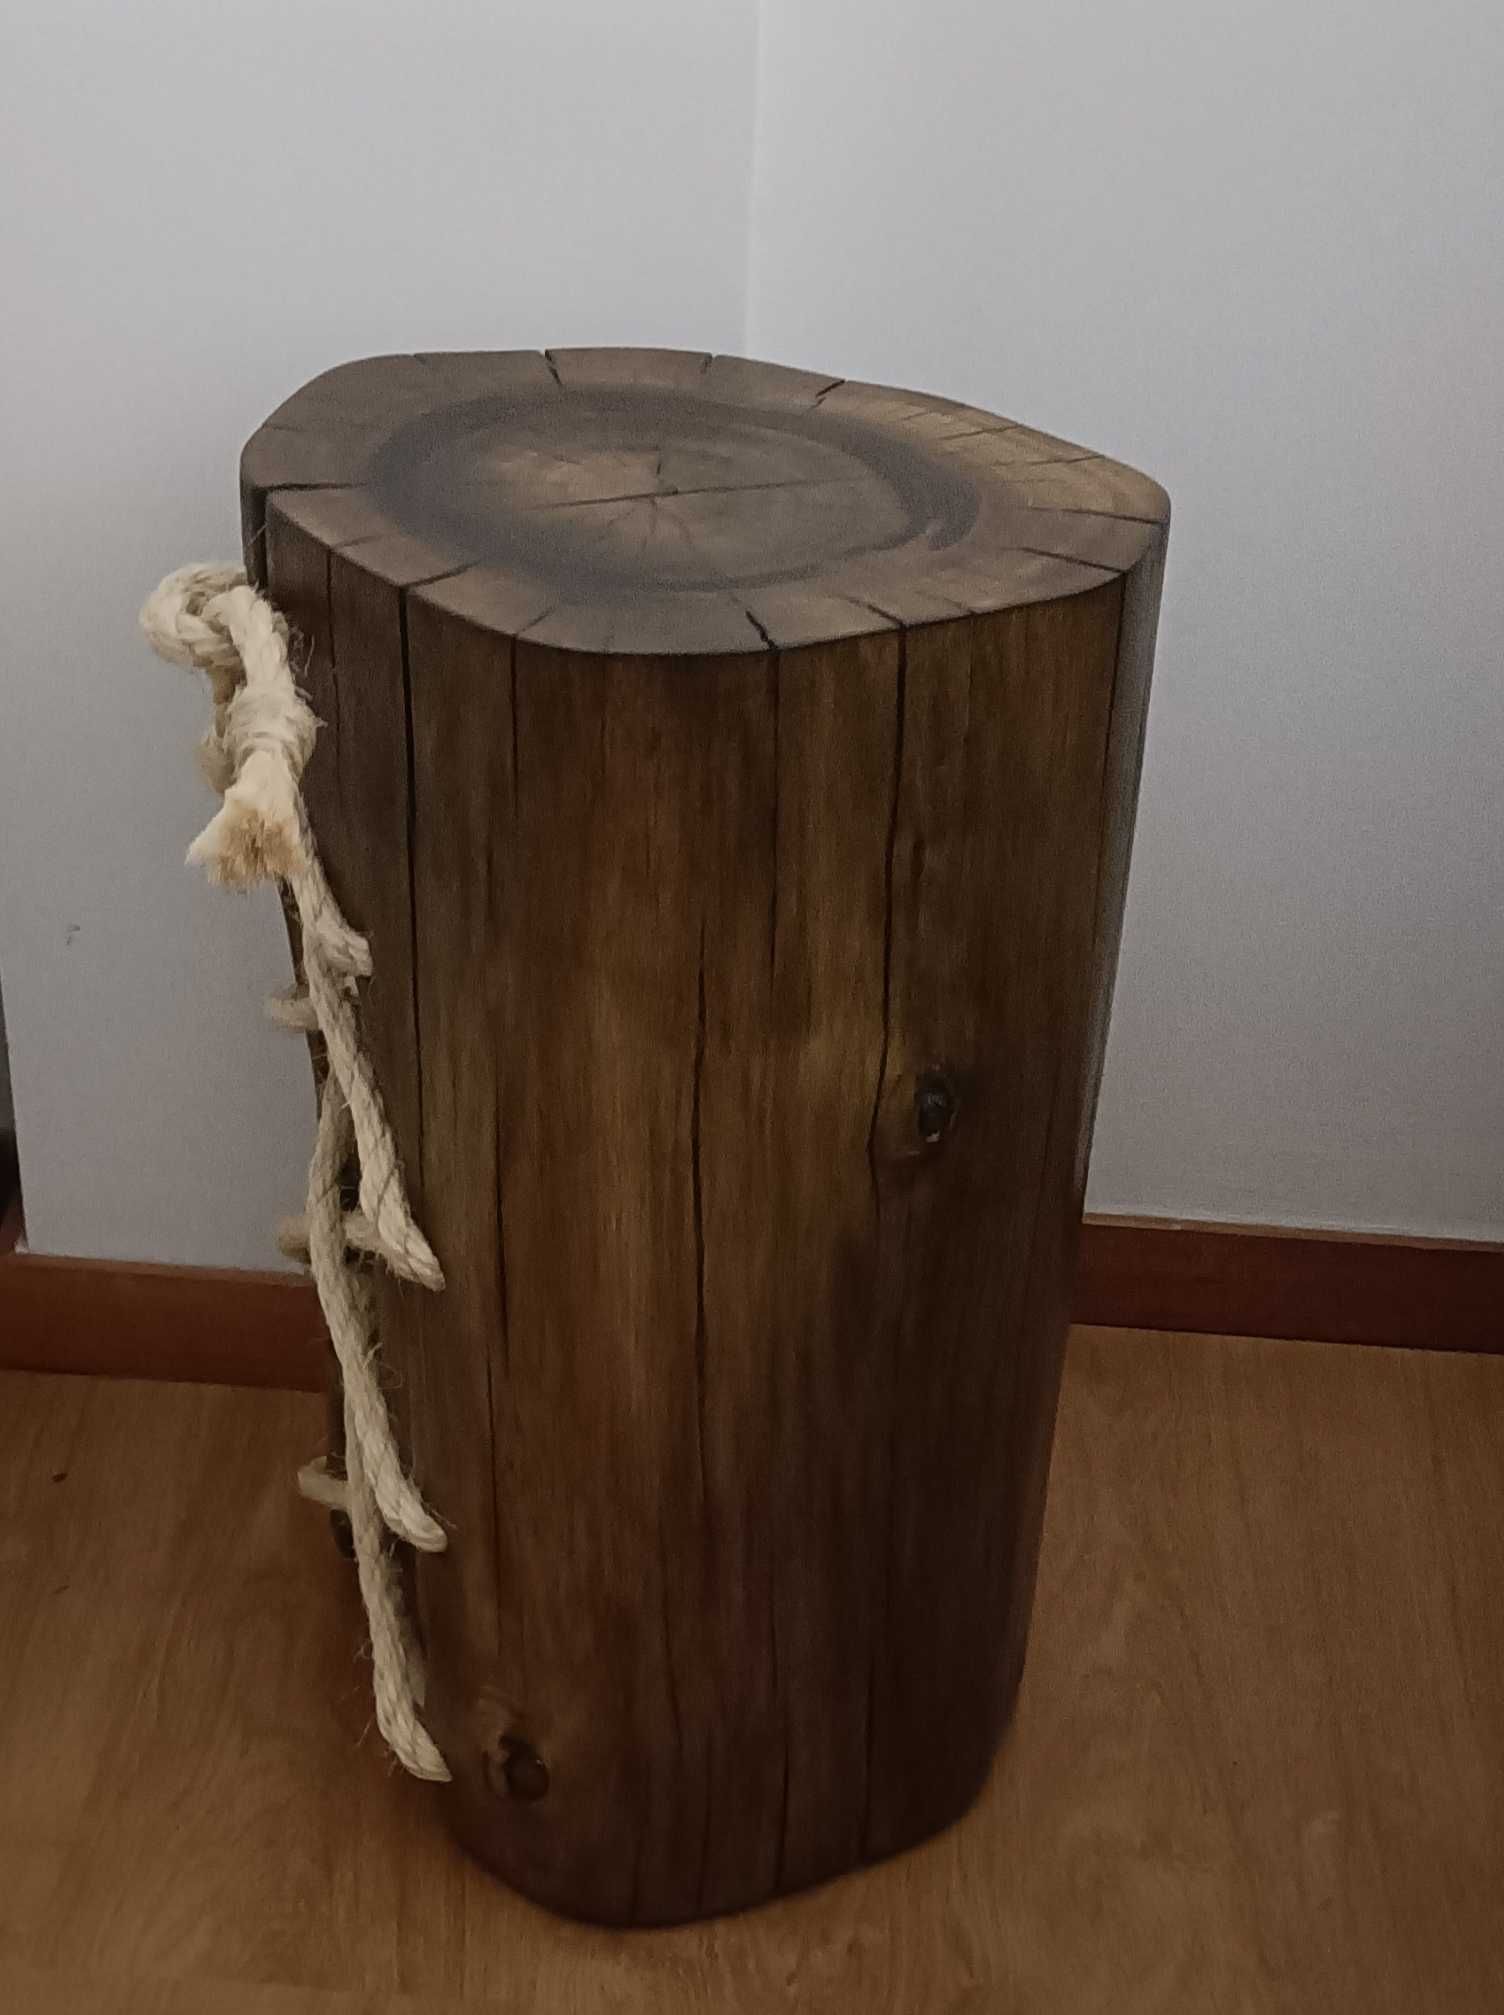 Mesa de apoio em madeira